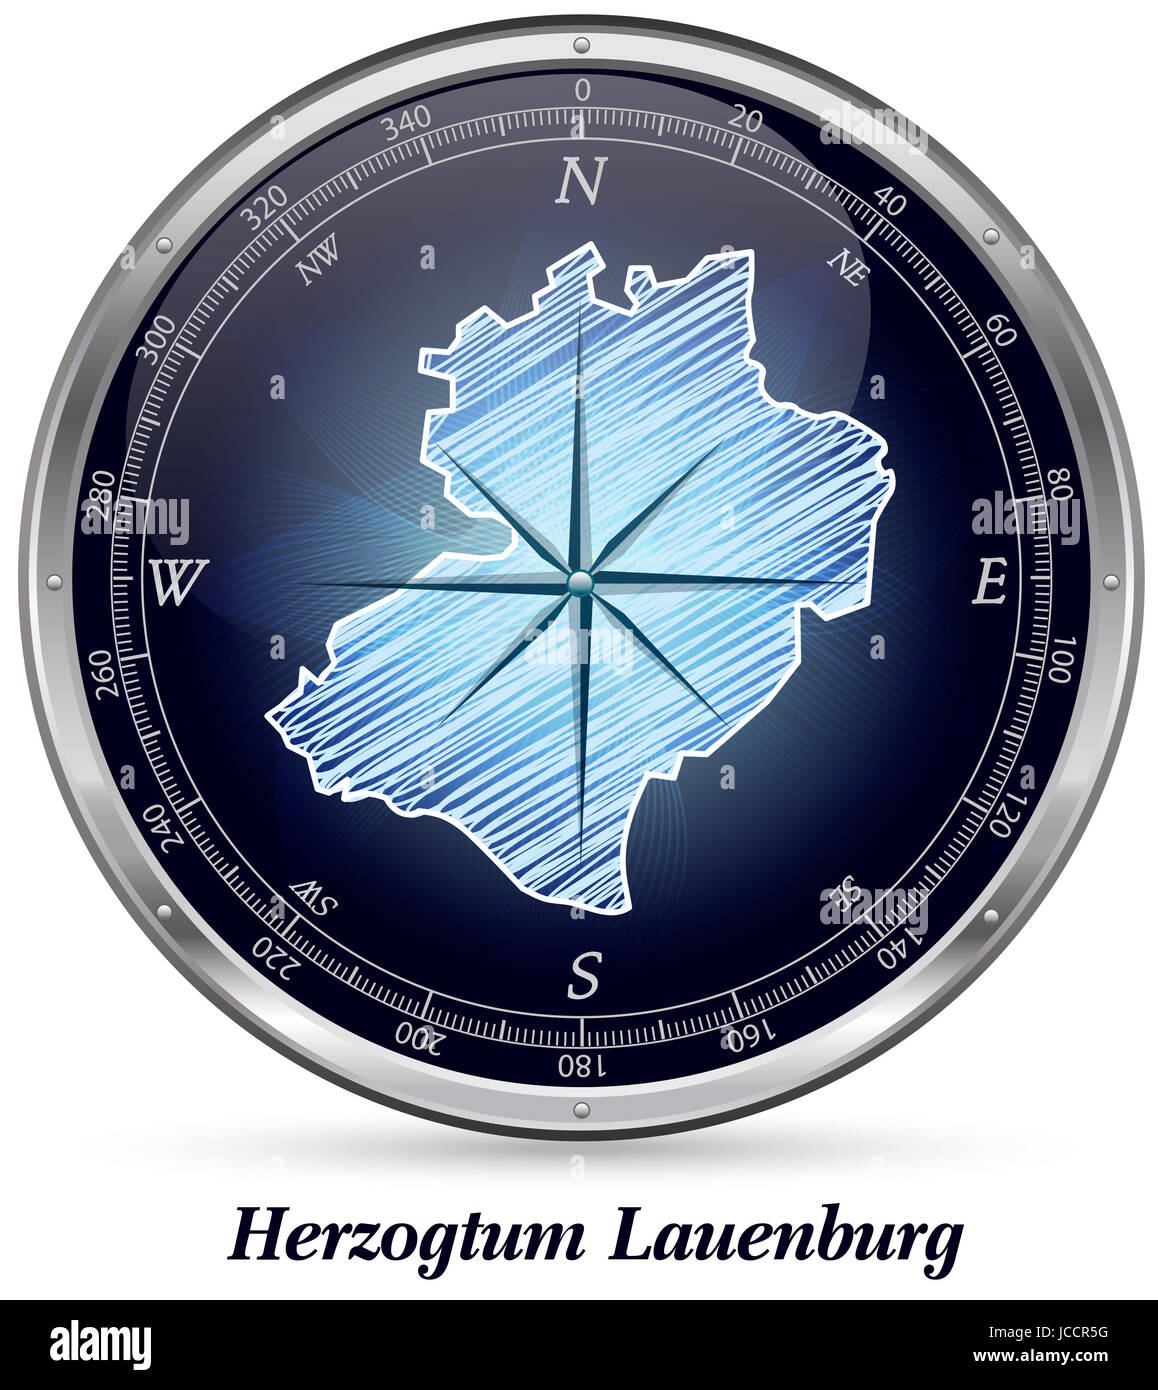 Herzogtum-Lauenburg mit Grenzen in Chrom Stock Photo